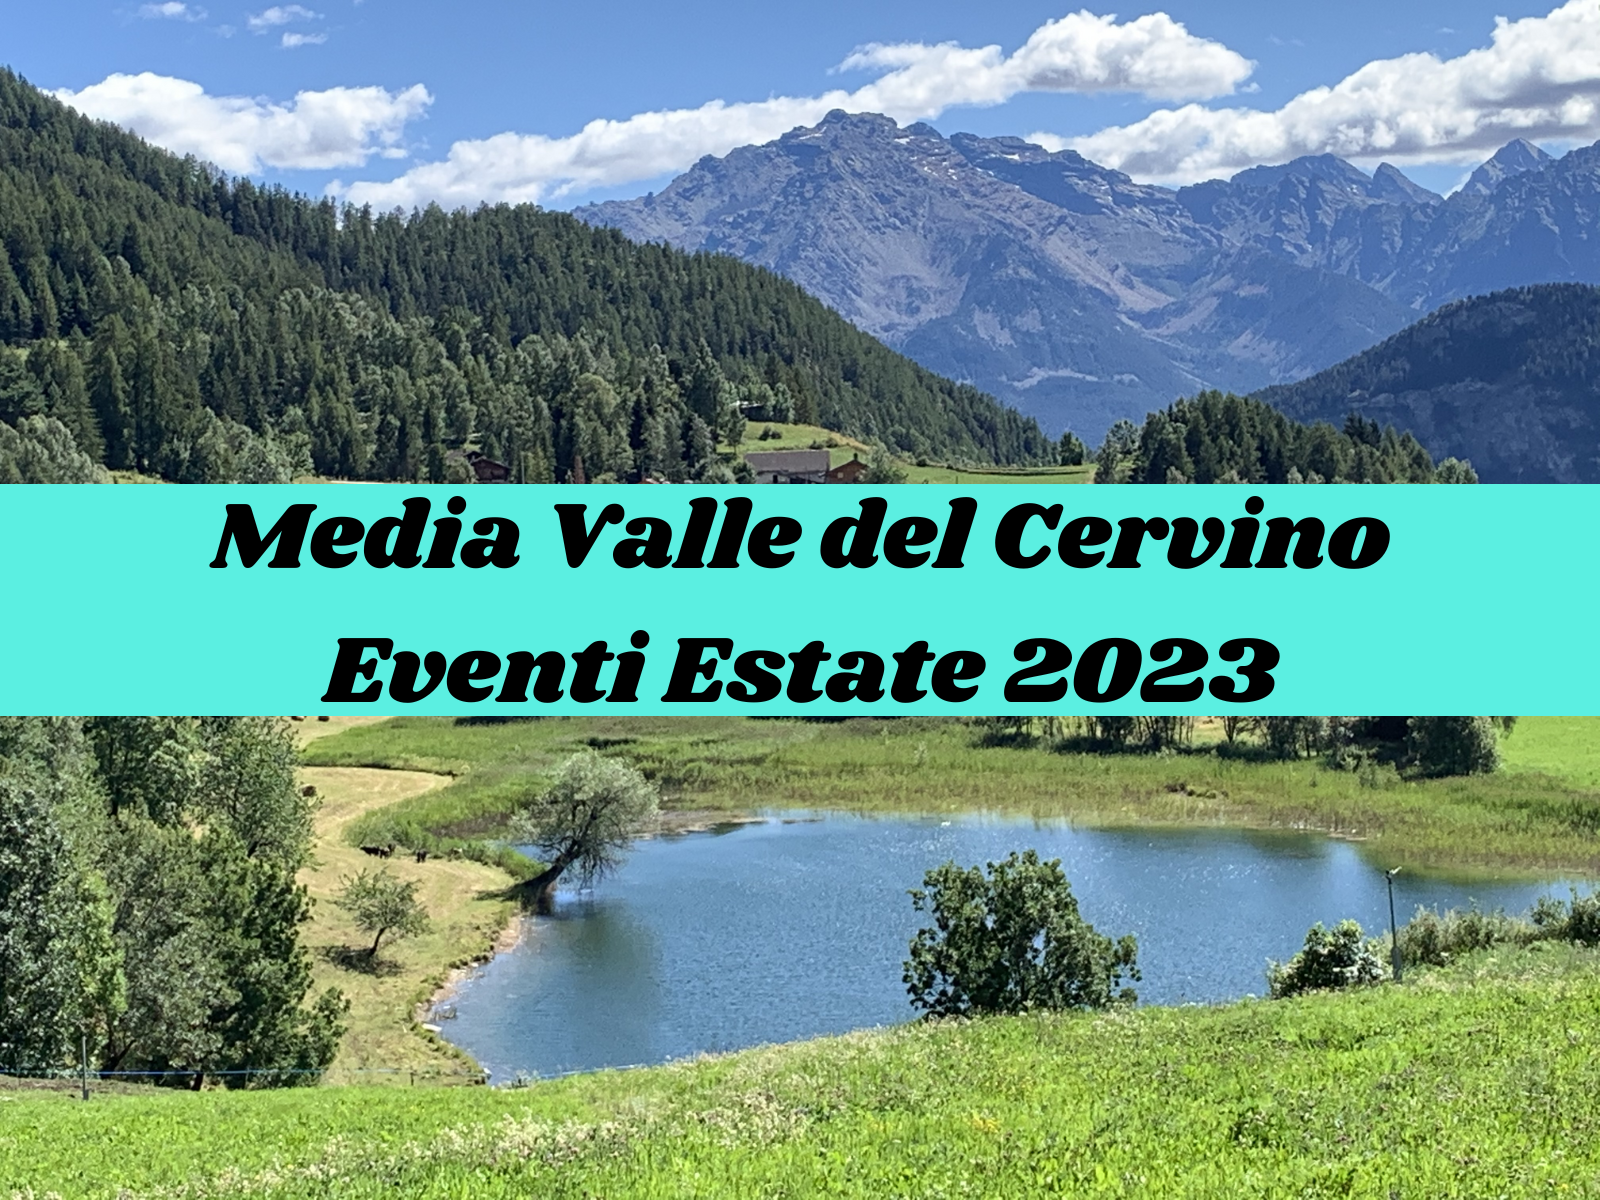 Media Valle del Cervino, un'estate ricca di eventi